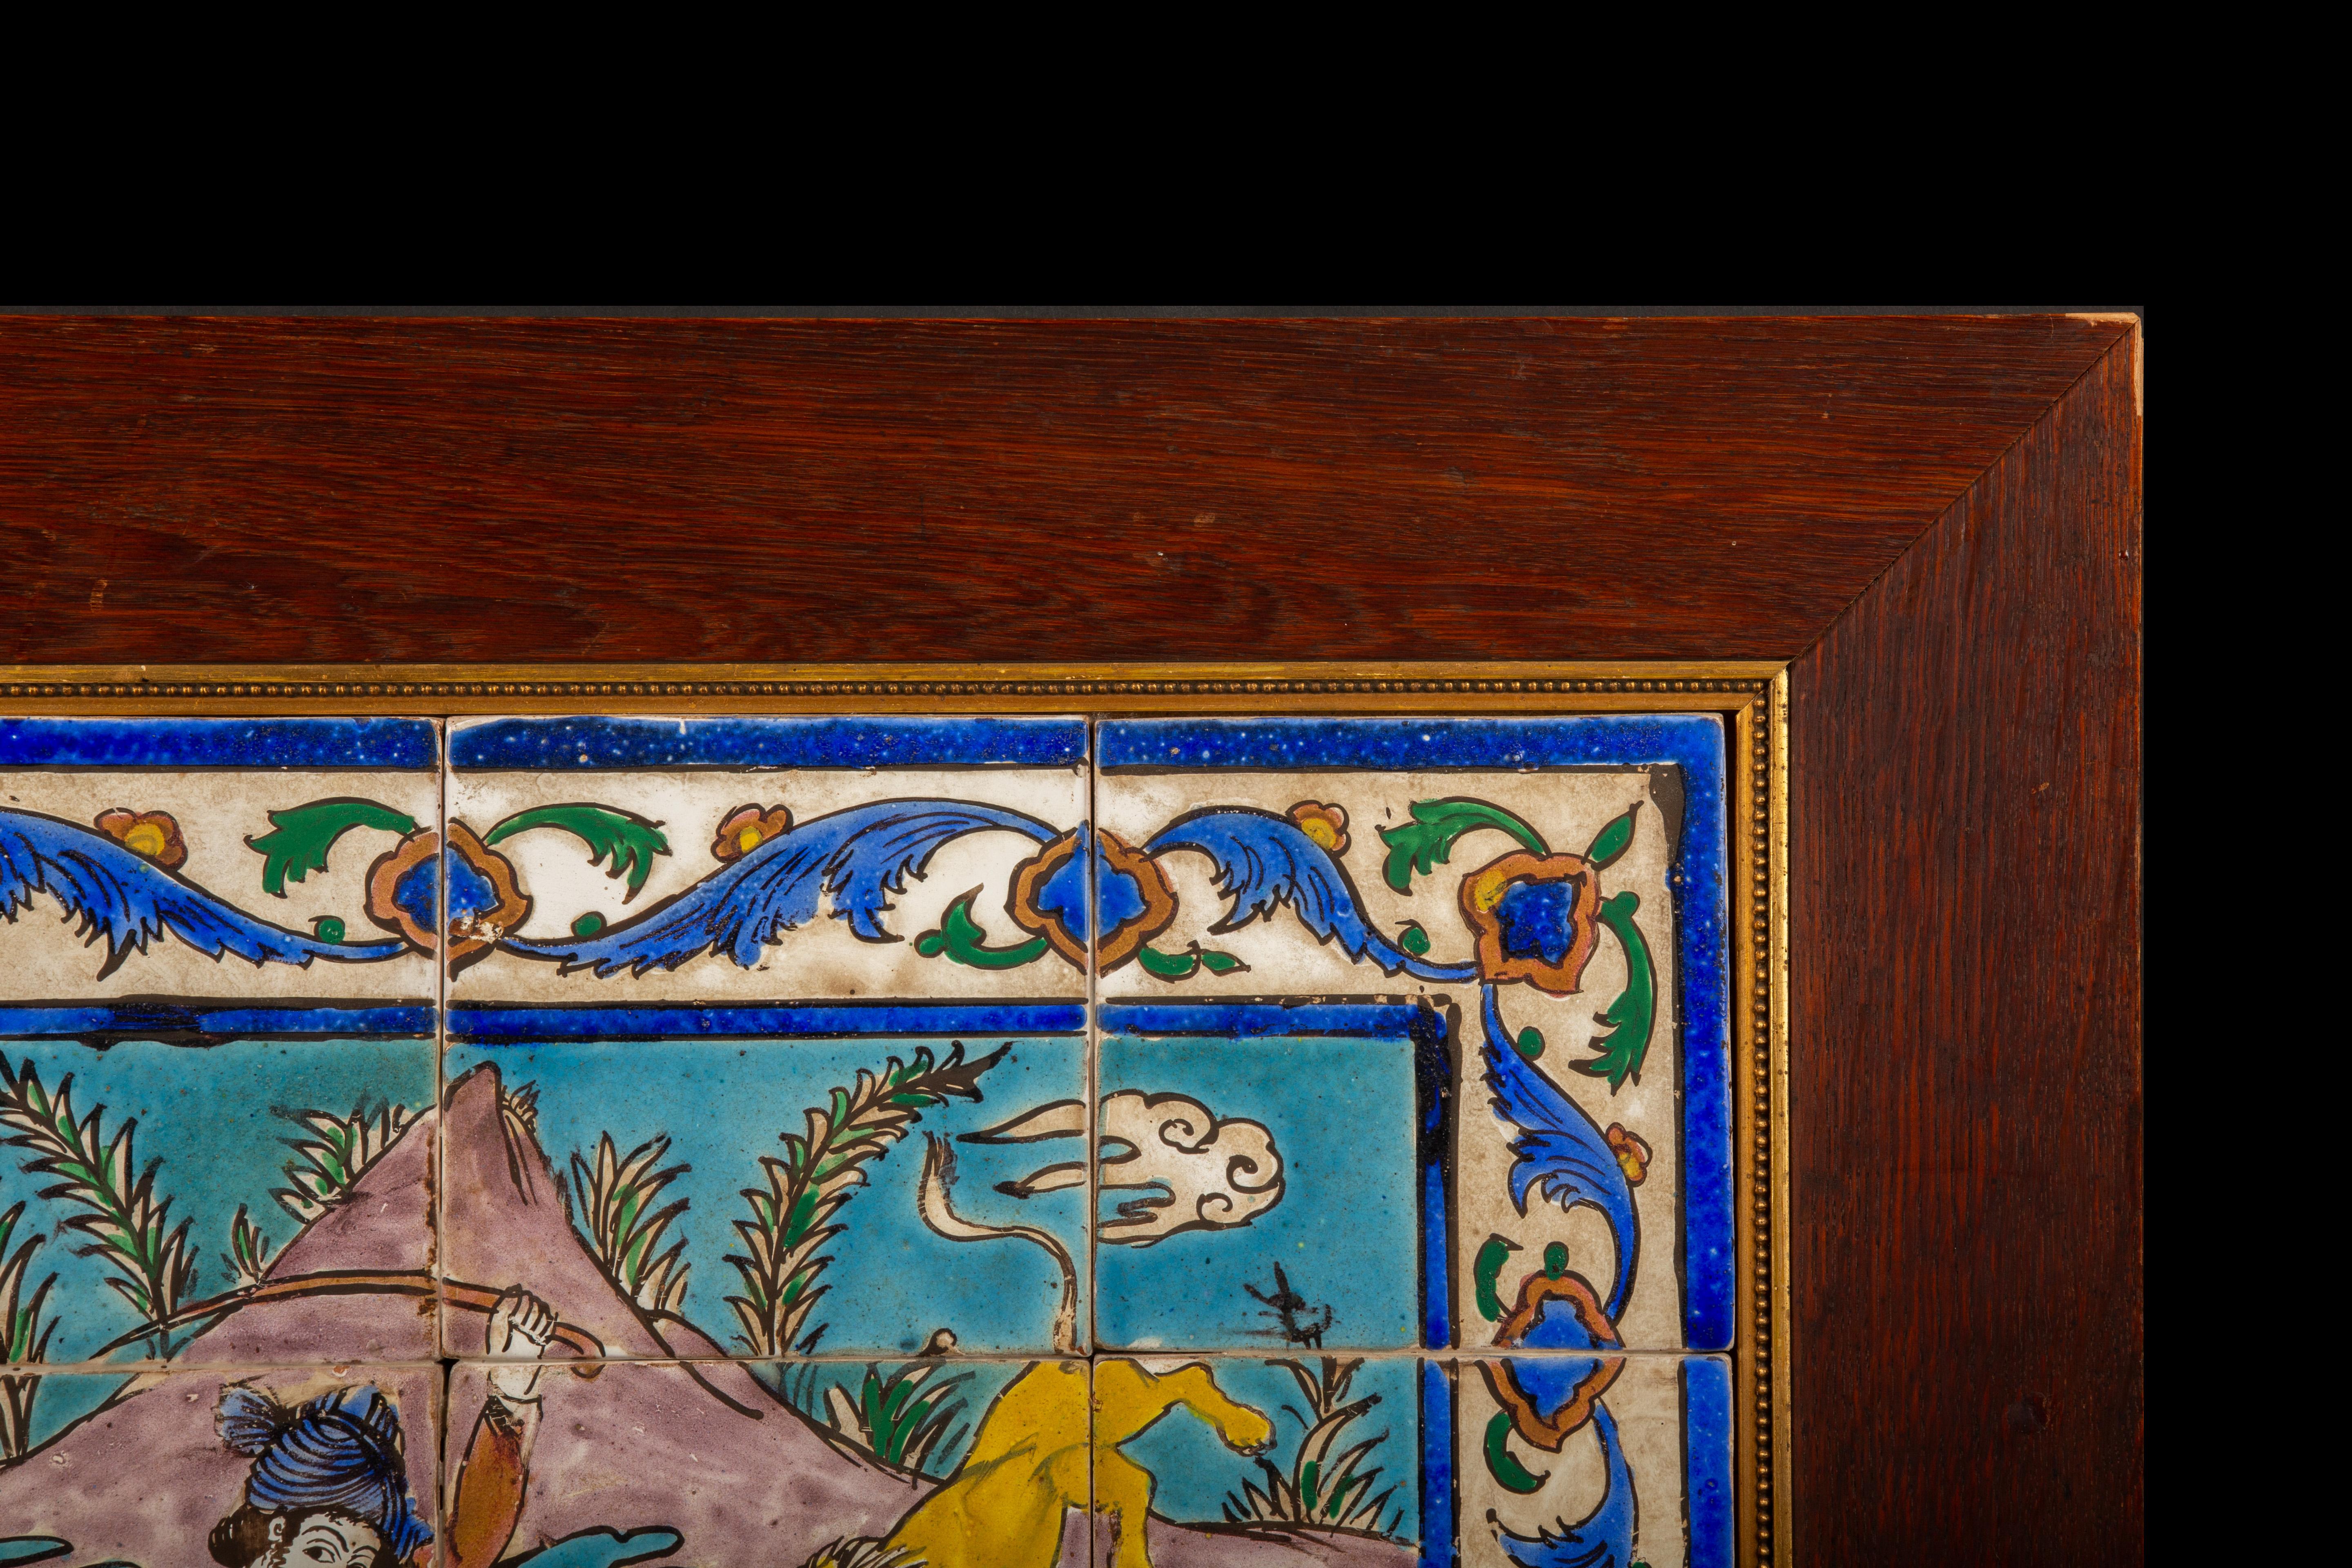 Exquis et intemporel, ce captivant panneau décoratif encadré date de l'illustre période Qajar en Iran. Réalisé avec la plus grande finesse, le panneau présente une splendide mosaïque de 20 carreaux de céramique émaillée, méticuleusement ornée d'une